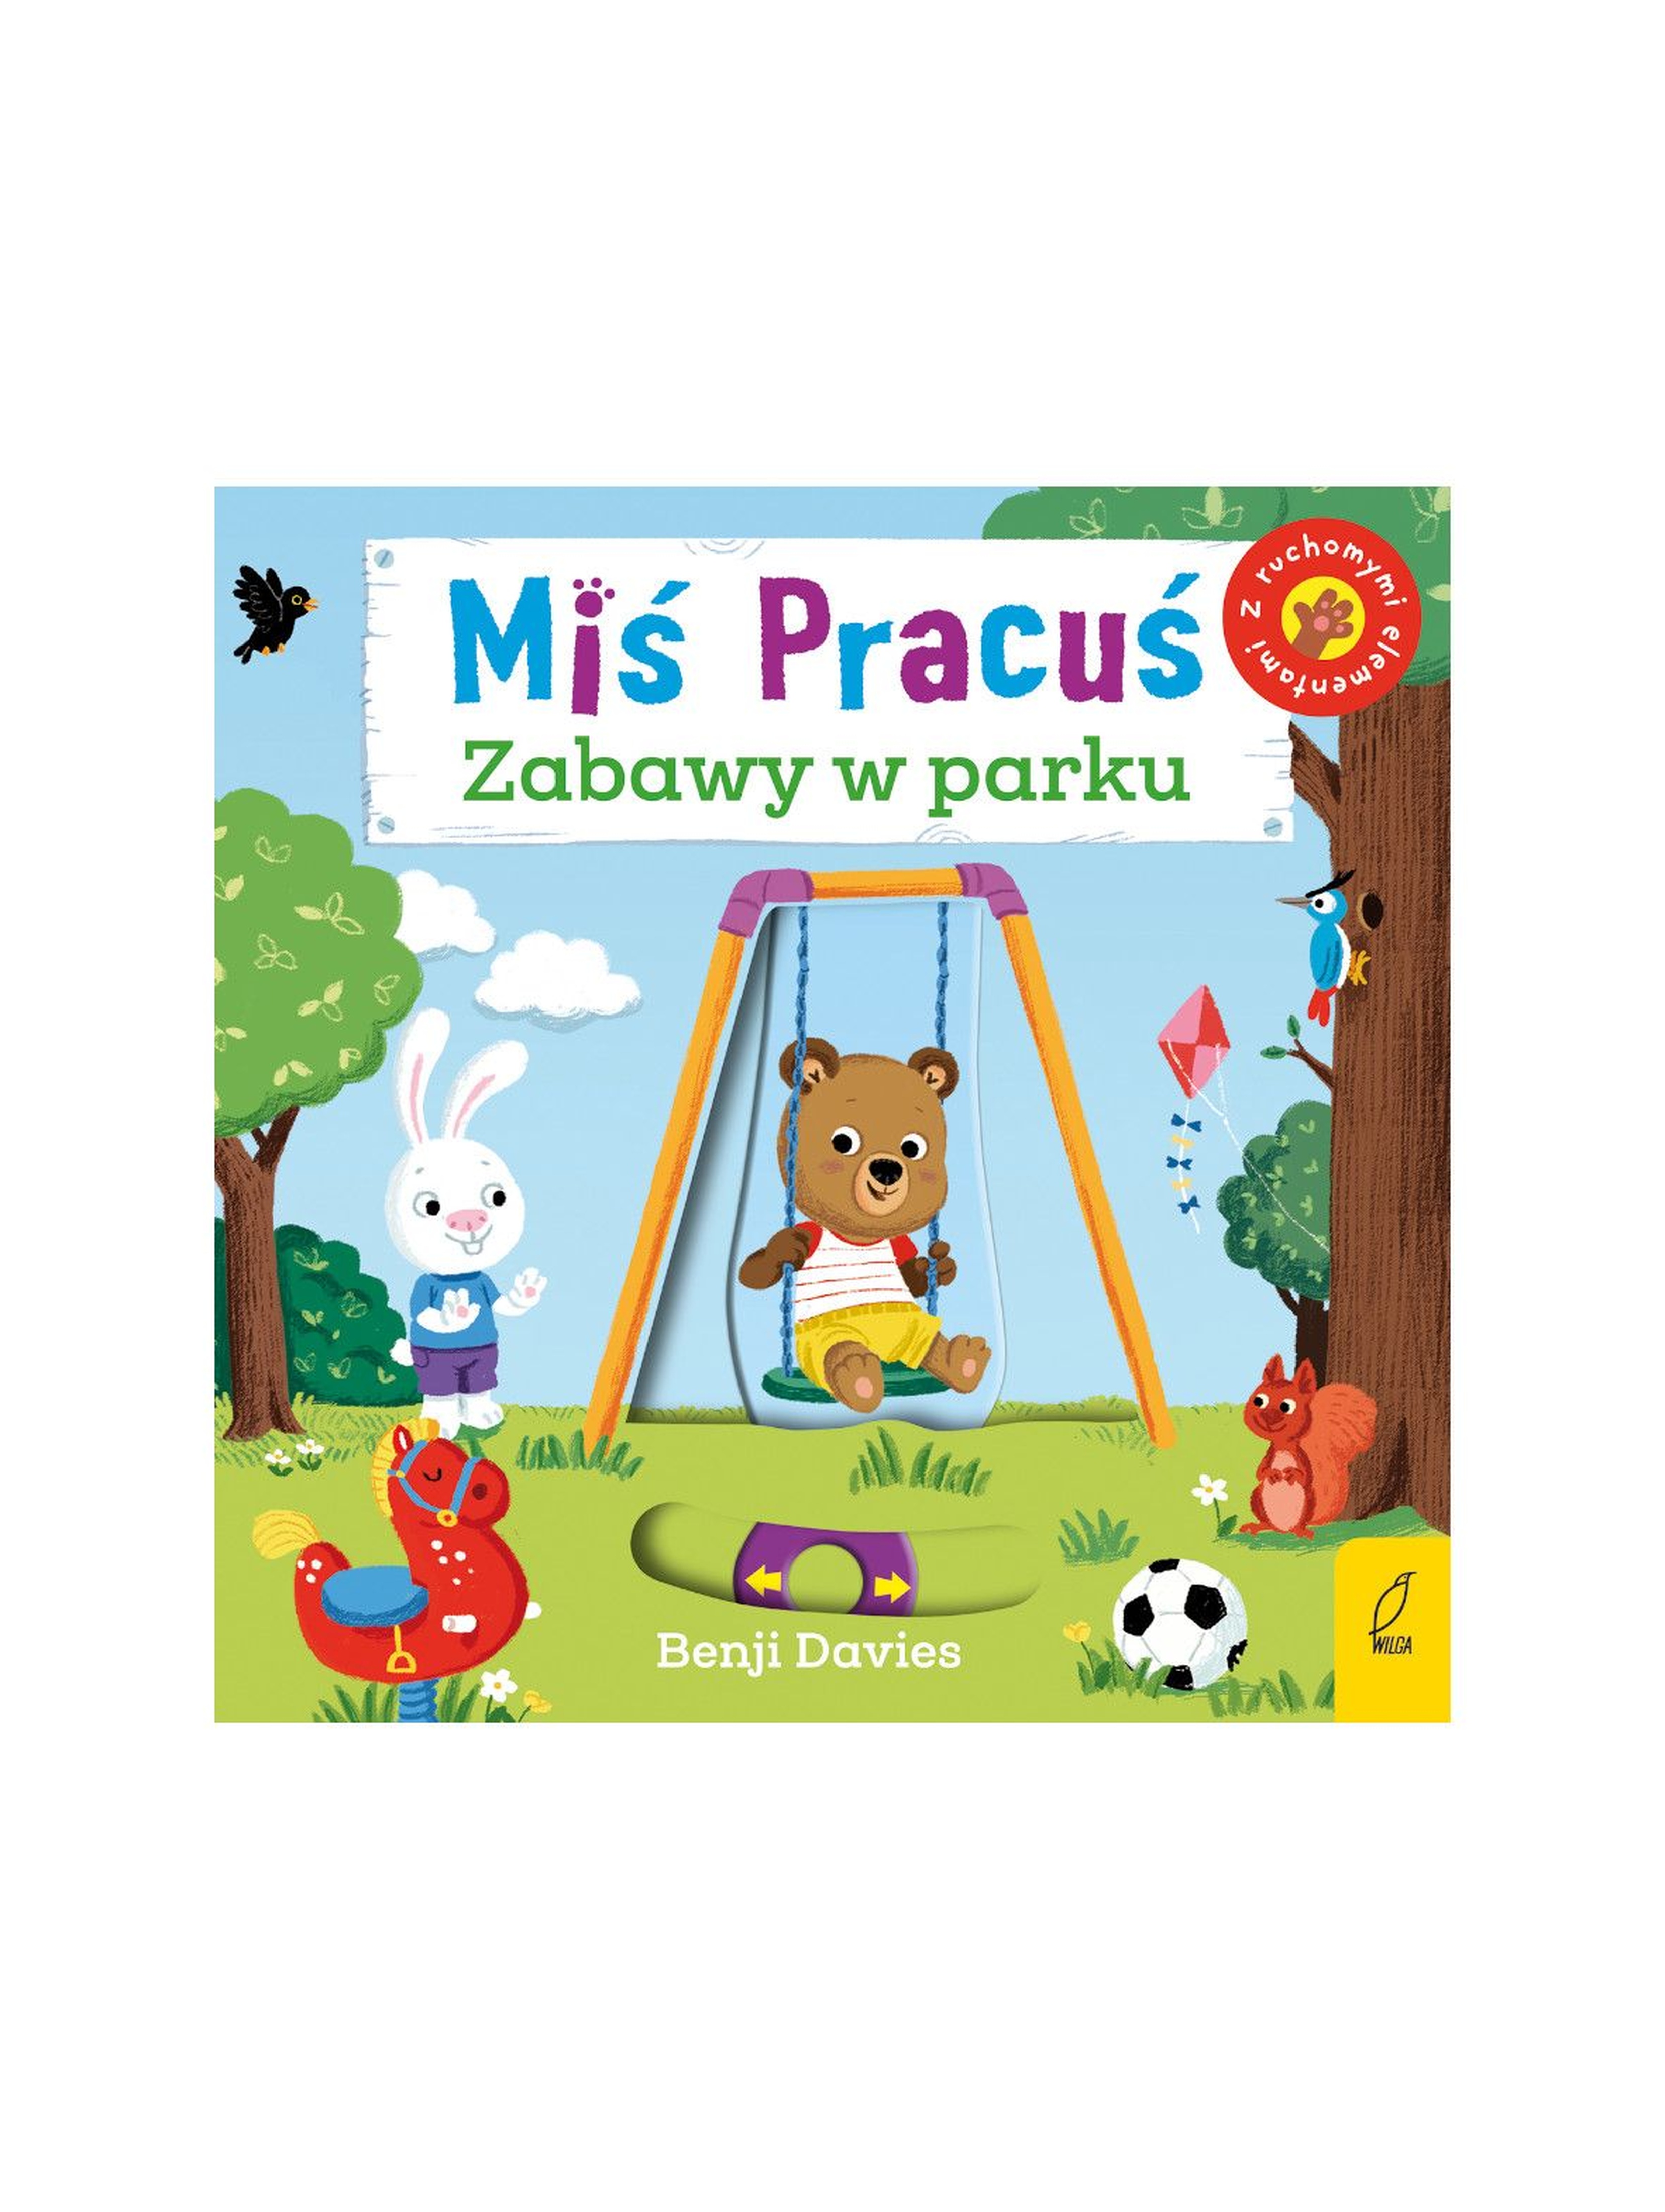 Książka dla dzieci- Miś Pracuś zabawy w parku wiek 2+